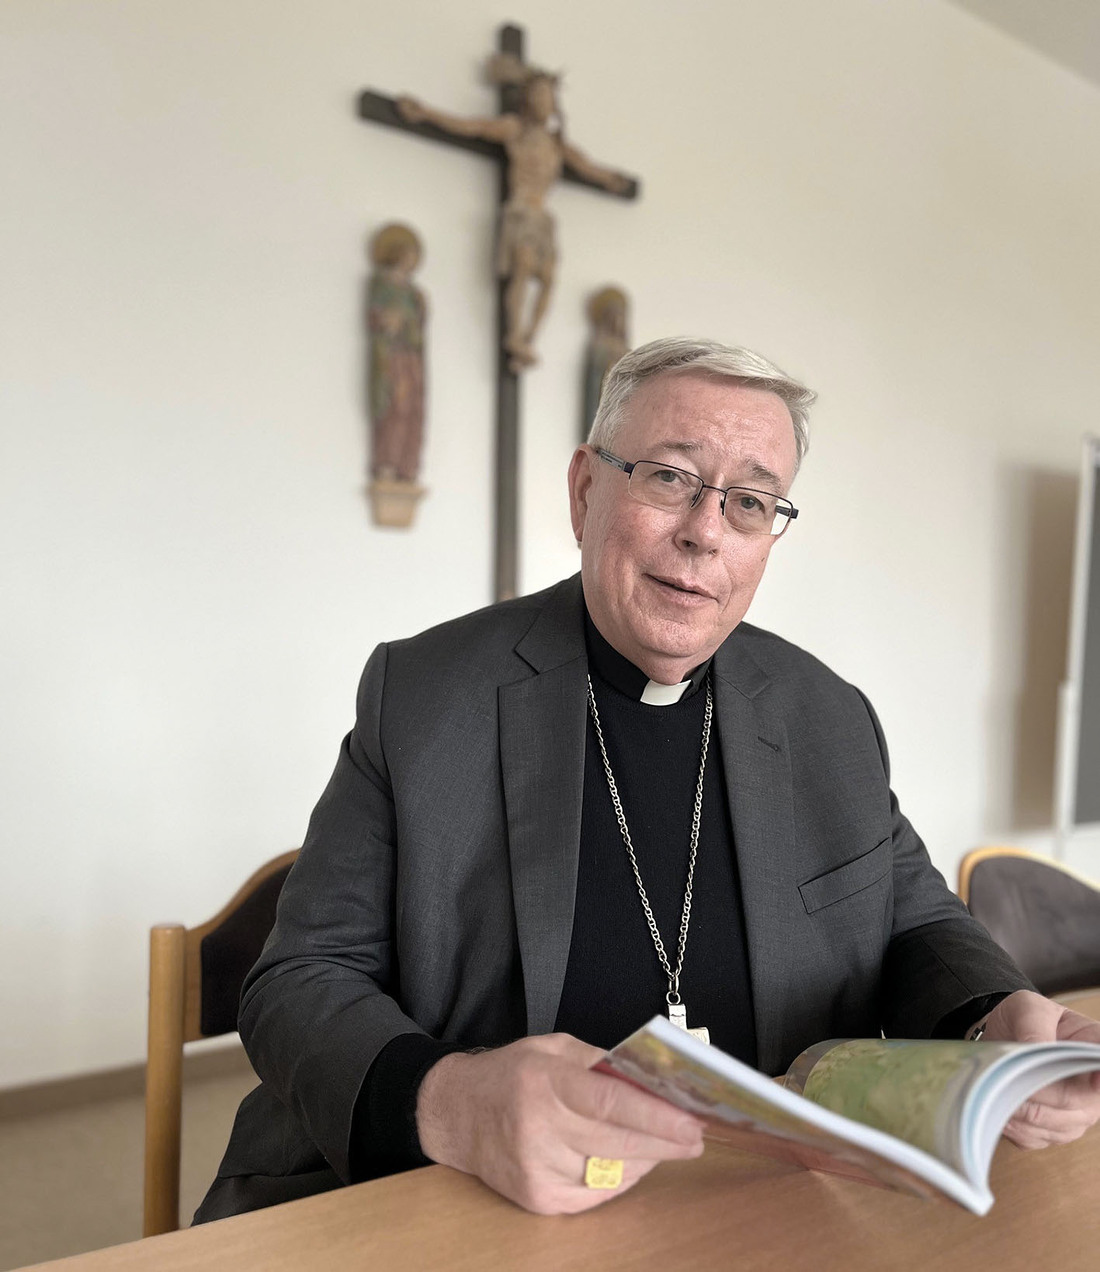 Ein Jesuit wie der Papst: 2019 machte Franziskus den Luxemburger Erzbischof Jean-Claude Hollerichs zum Kardinal. Seit 2023 ist er im Kardinalsrat, dem Beratergremium zur Reform der Leitung der Kirche.